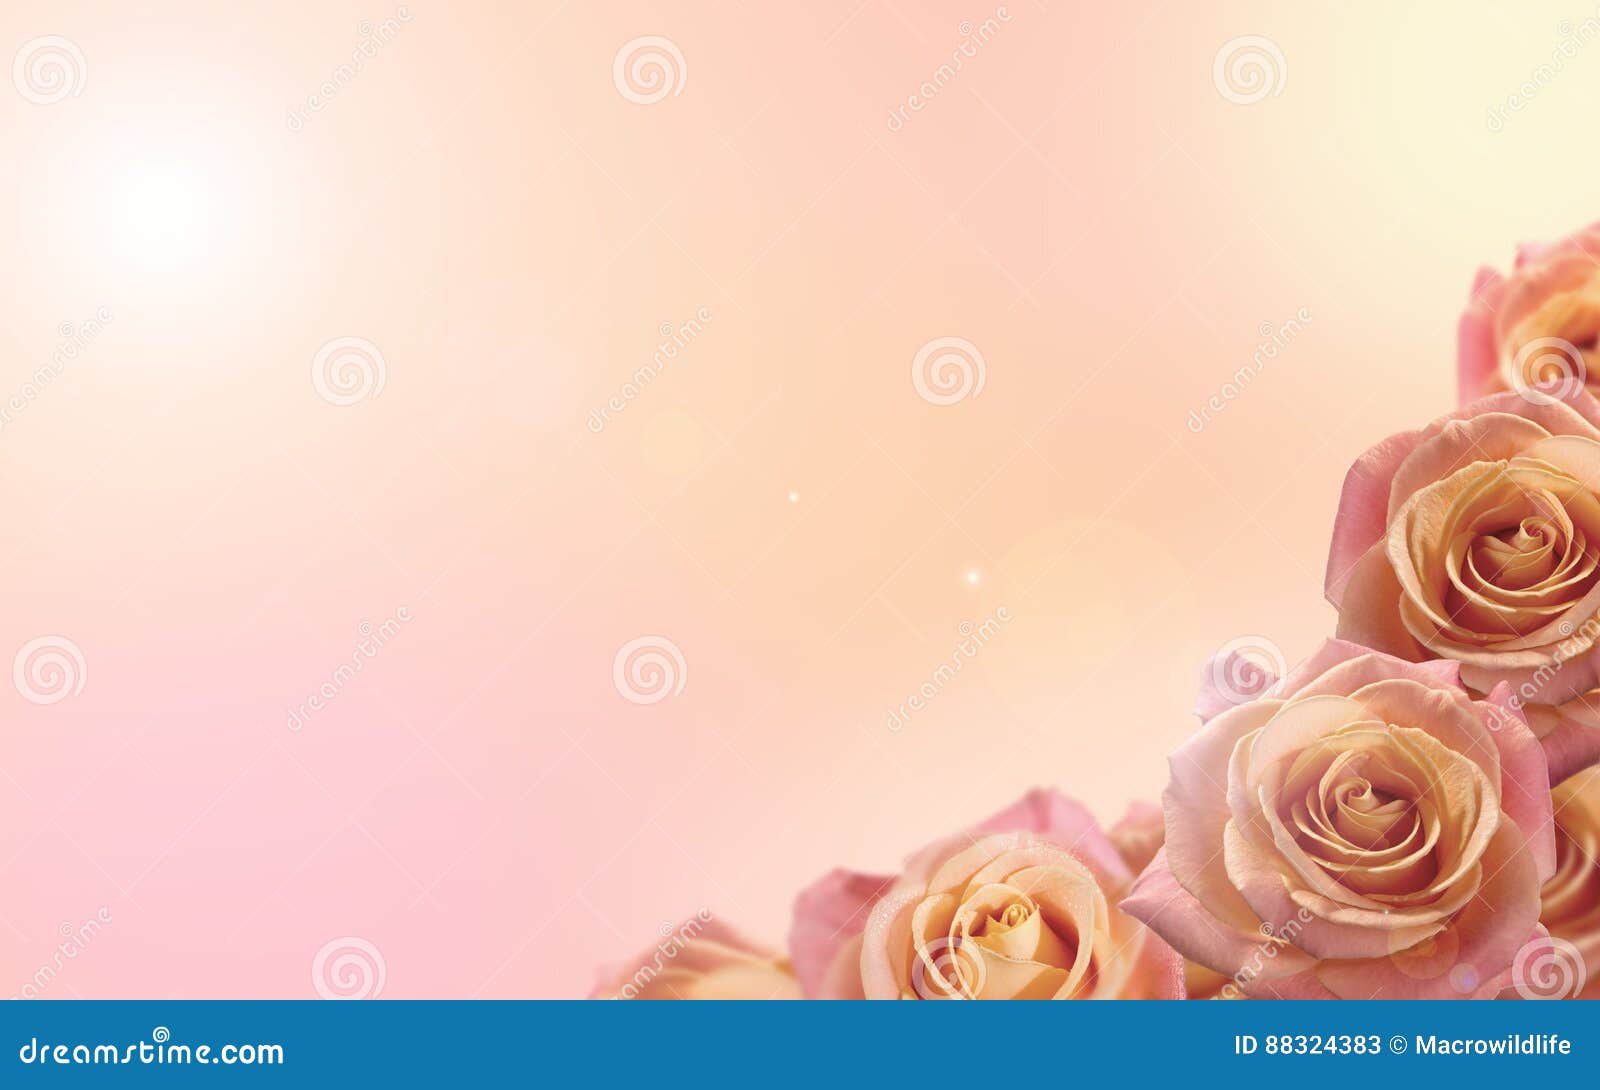 Hình ảnh với nền hoa hồng sẽ đem lại cho bạn cảm giác nhẹ nhàng và dịu dàng. Những cánh hoa xen lẫn giữa bức ảnh sẽ khiến bạn cảm thấy như đang ở trong một vườn hoa thơ mộng.